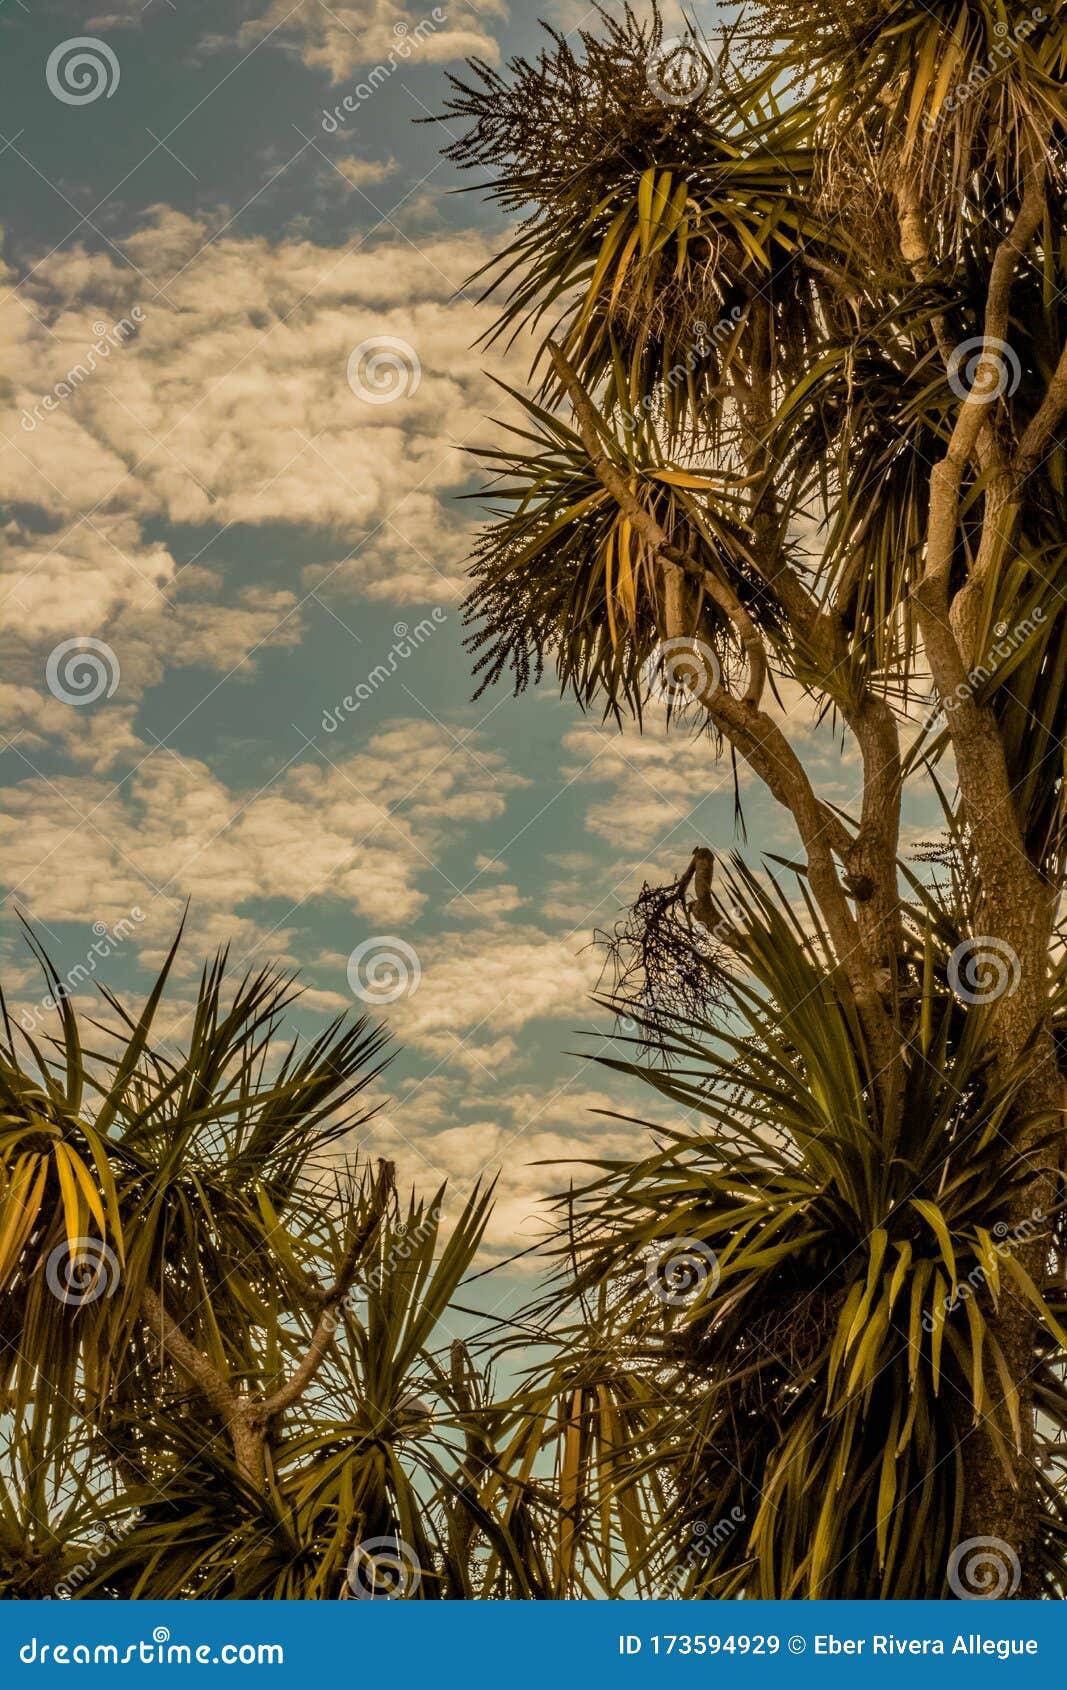 cielo con nubes sobre palmeras